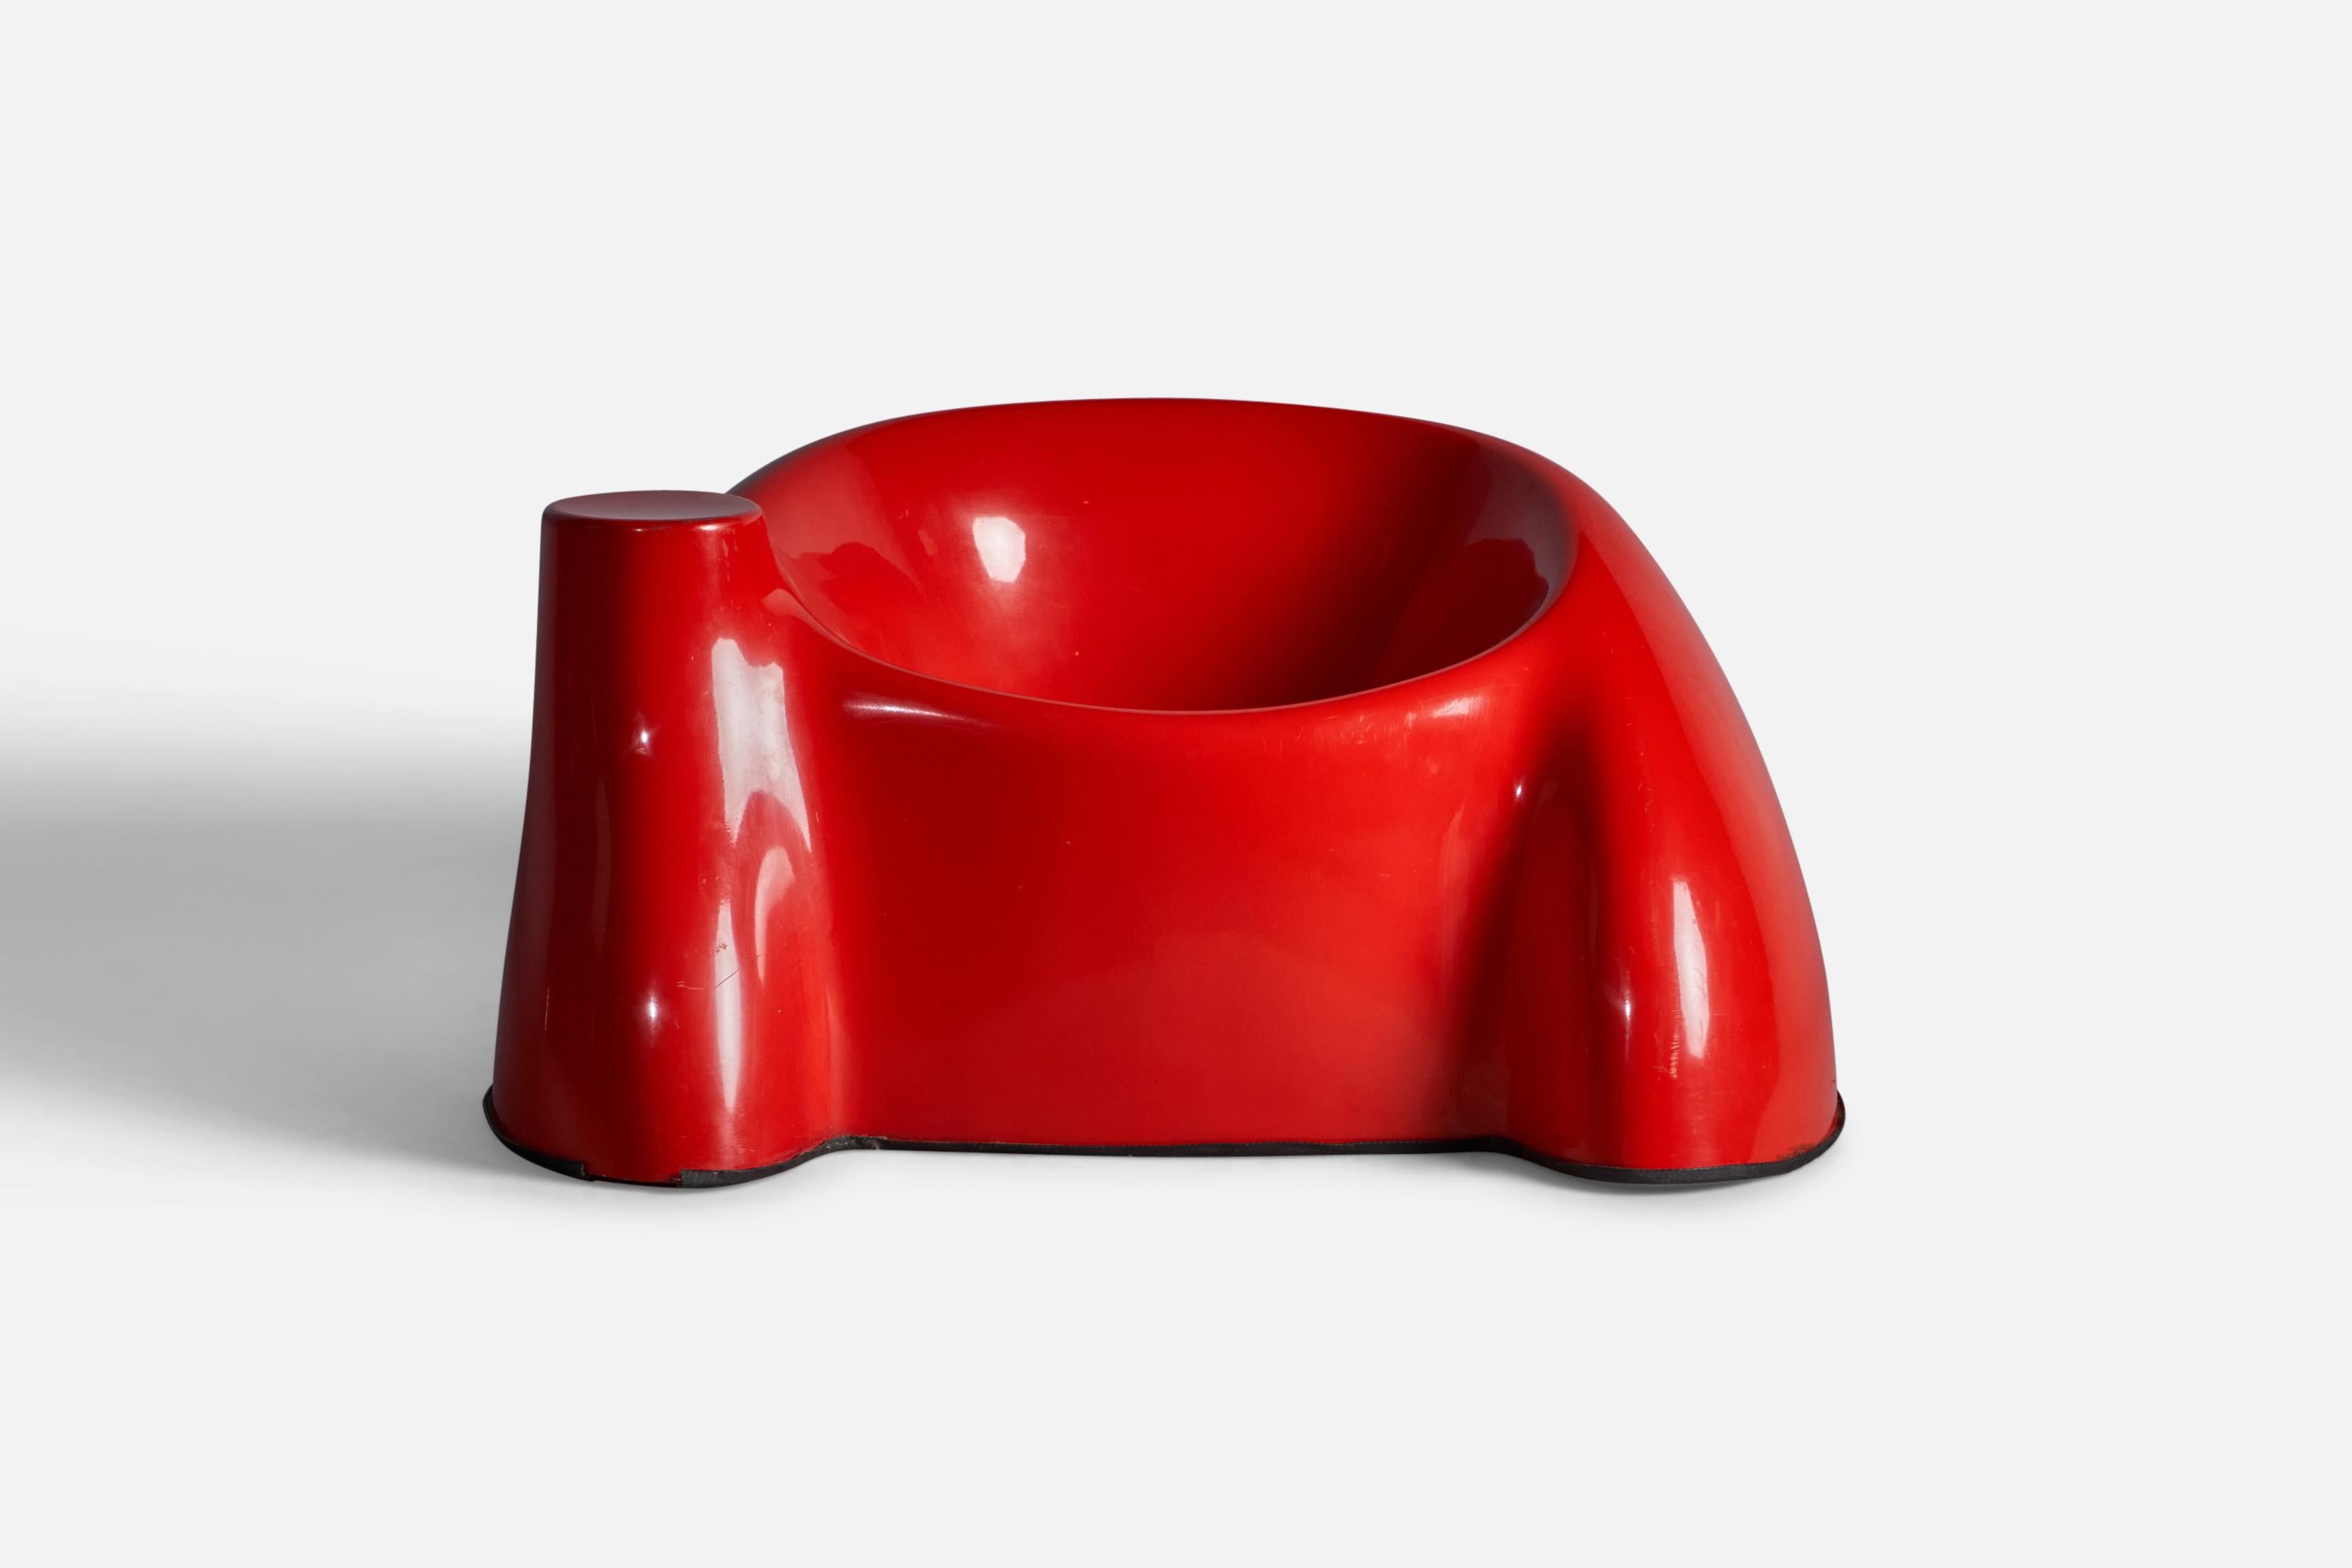 Ein rot lackierter Loungesessel aus Fiberglas, entworfen und hergestellt von Wendell Castle, USA, 1970er Jahre.

14,75